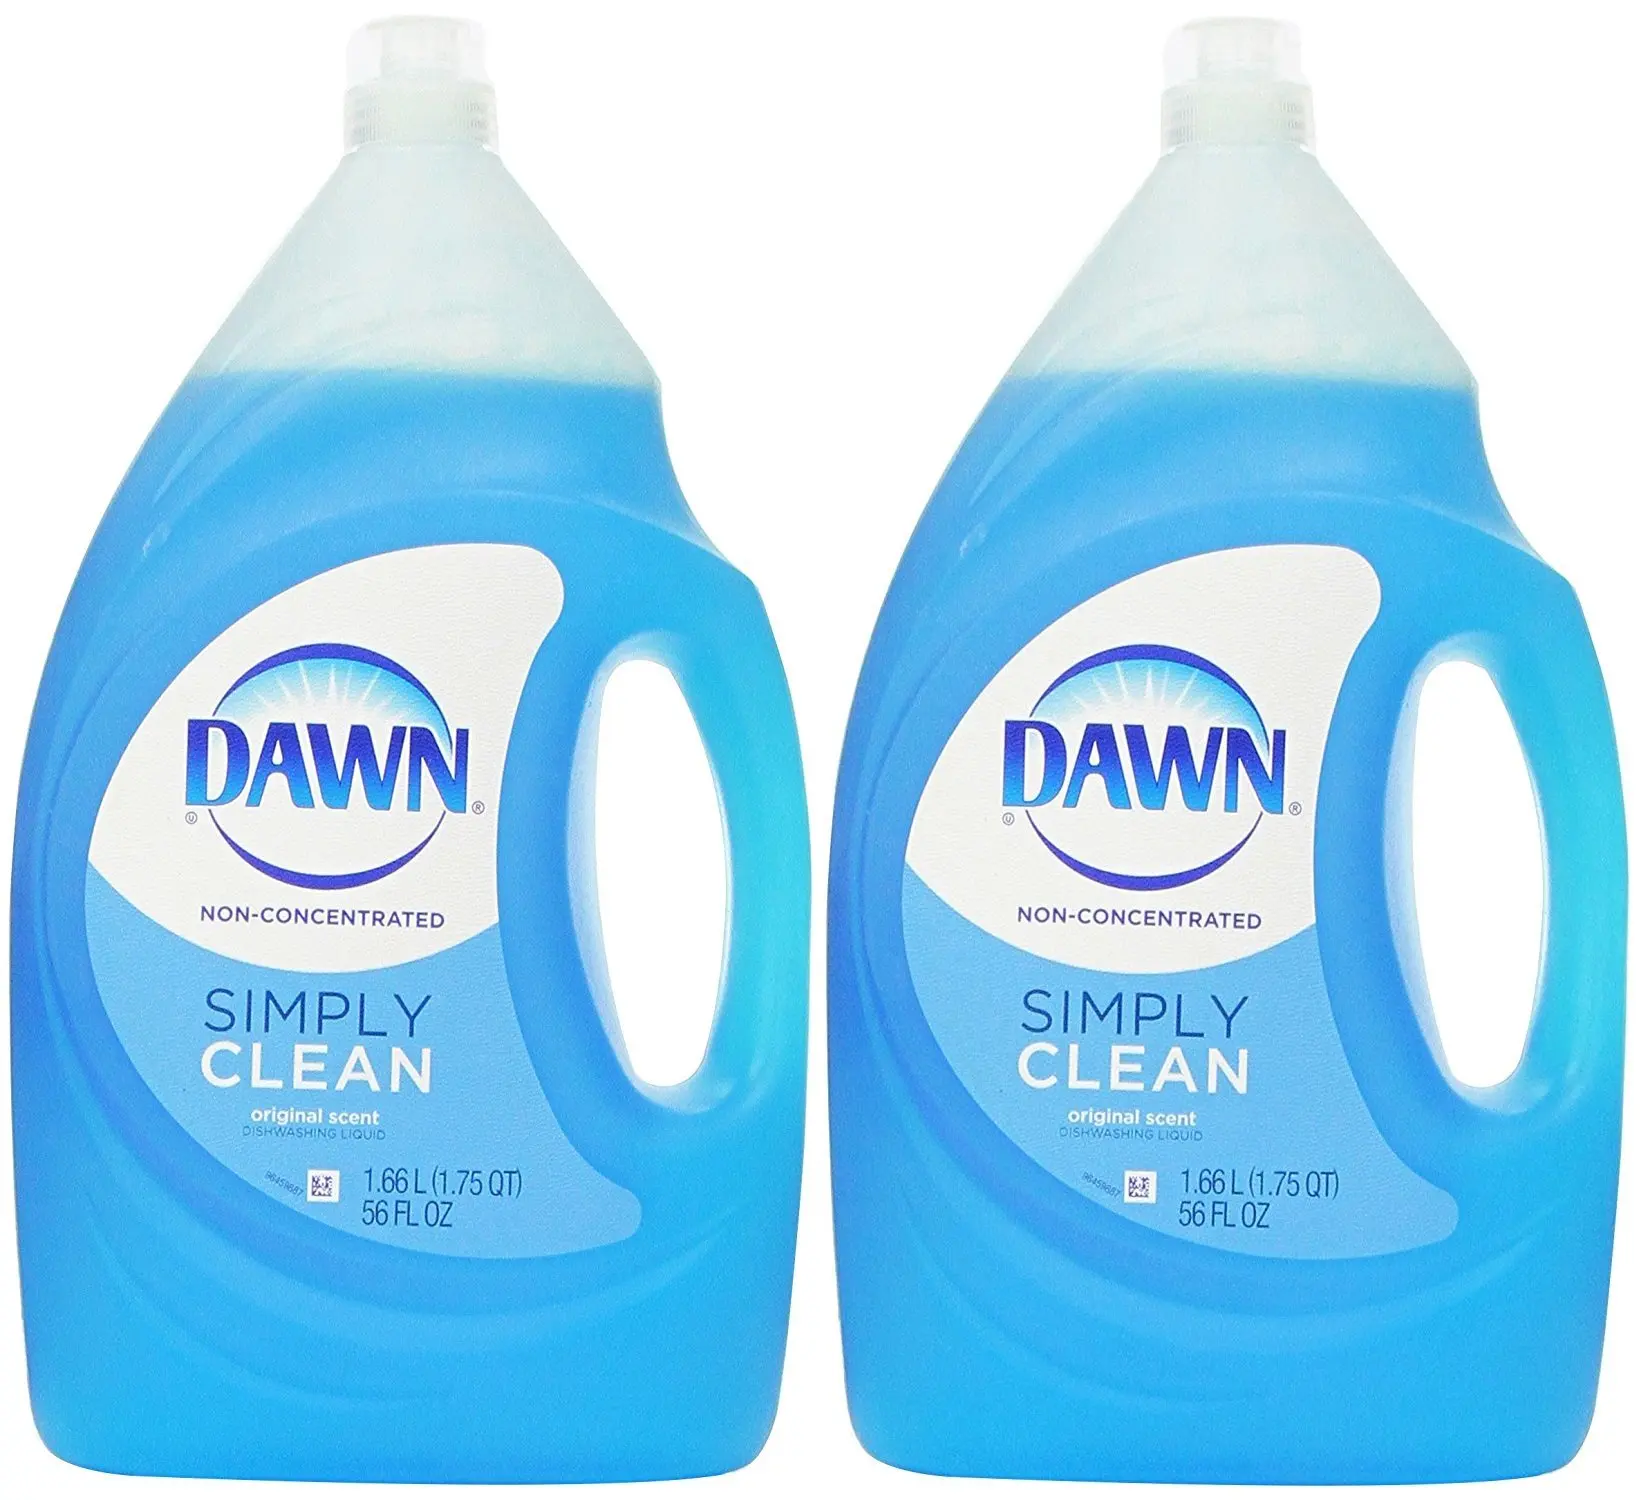 Simply cleaning. Dawn Dishwashing Liquid. Dawn Cleaner. ABC Dishwashing Liquid. Топ non cleans.